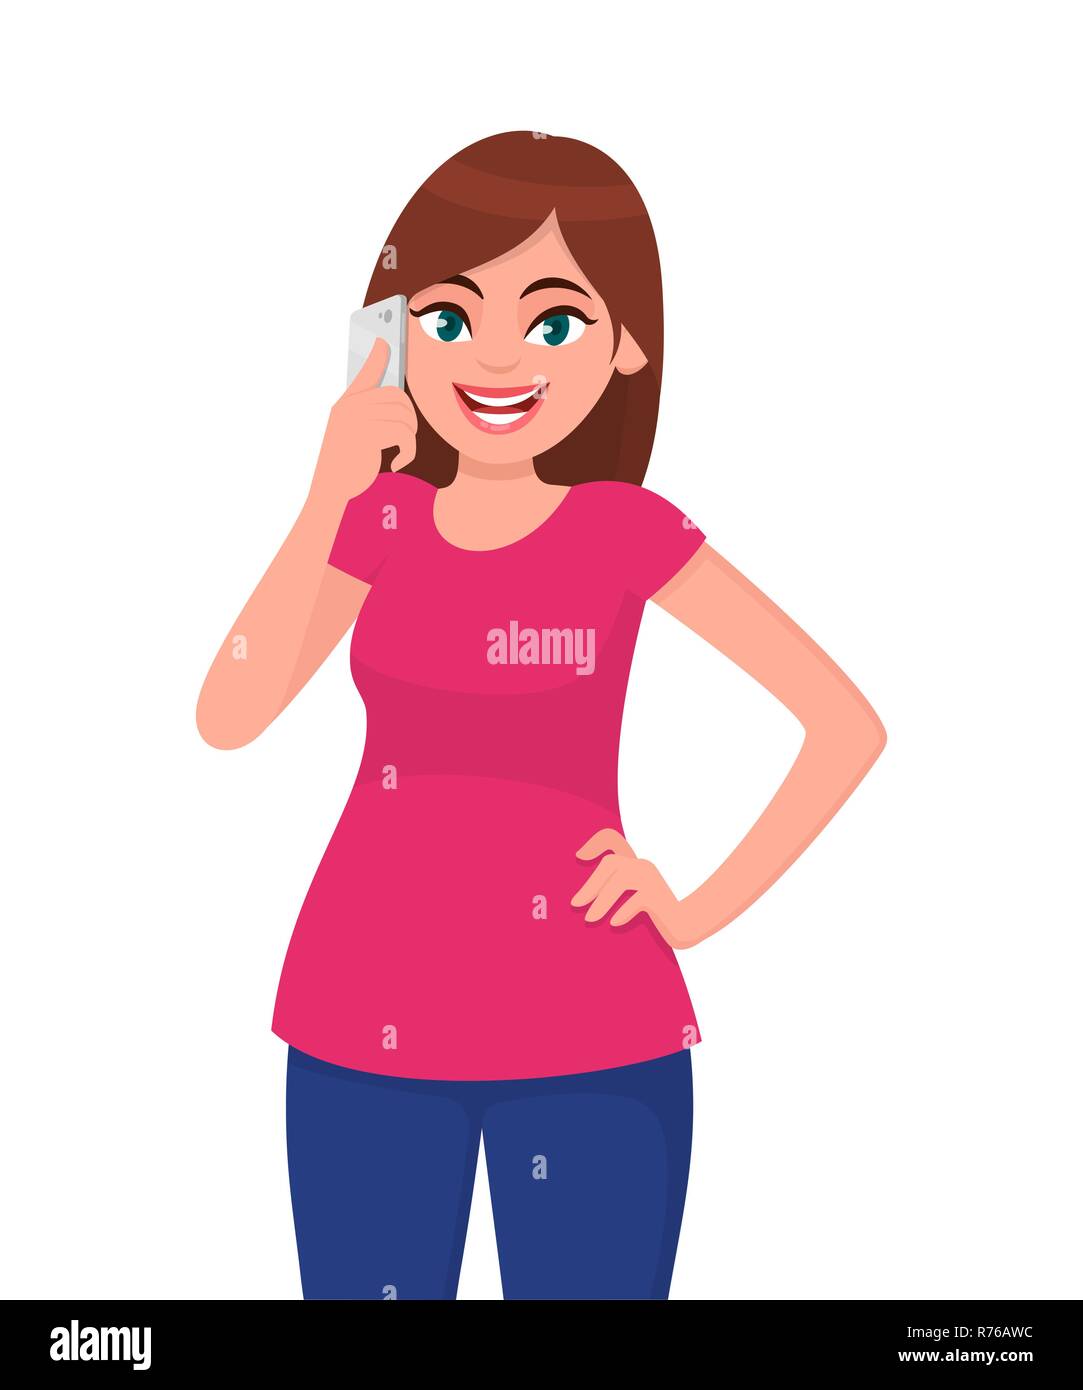 Lächelnd schöne junge Frau mit Smart Phone während die Hand auf der Hüfte, vor weißem Hintergrund. Moderner Lifestyle und Kommunikation Stock Vektor